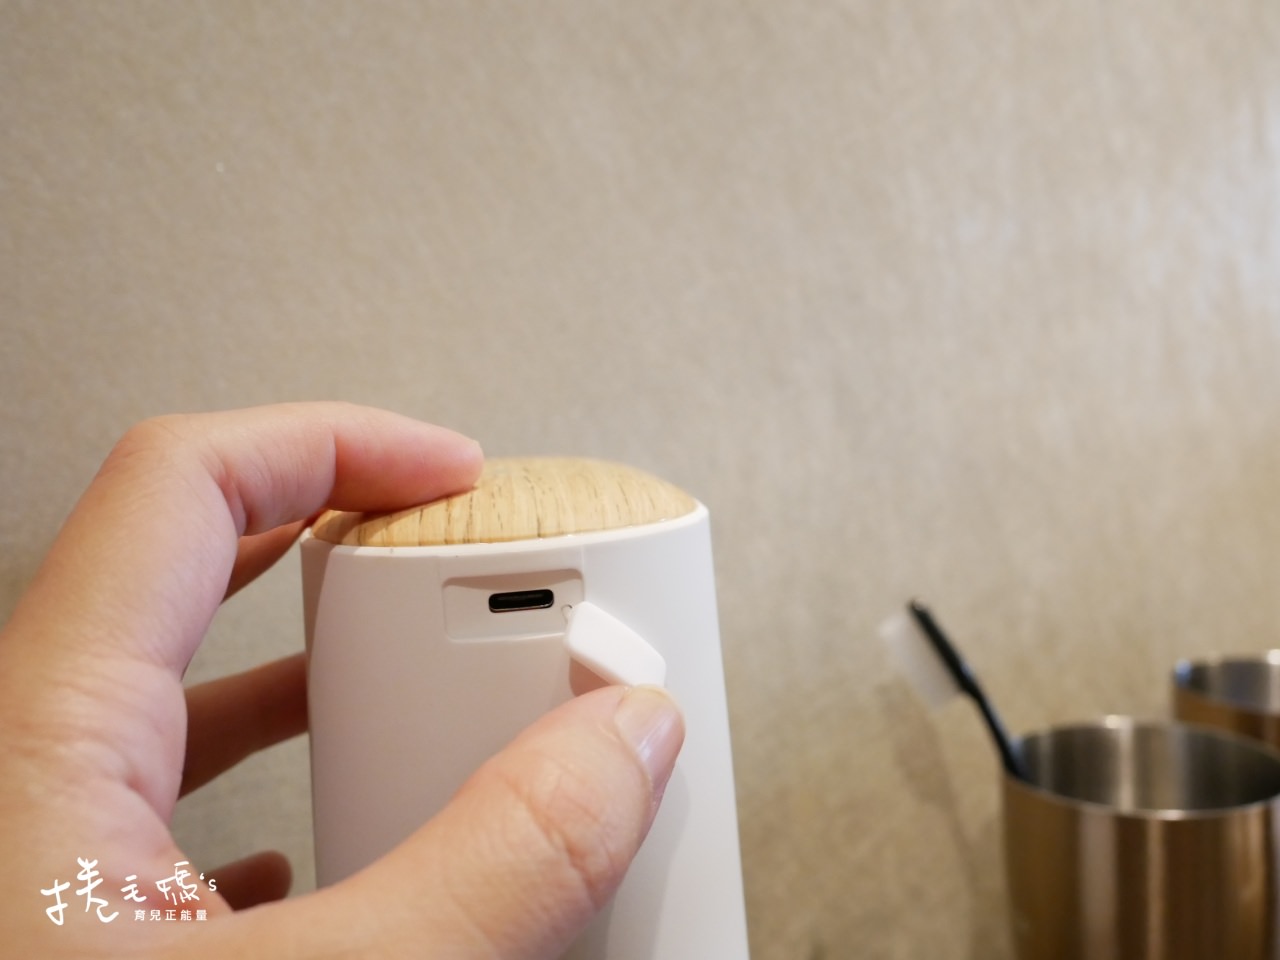 洗手機推薦 自動給皂機 自動感應給皂機 decopop P1020306